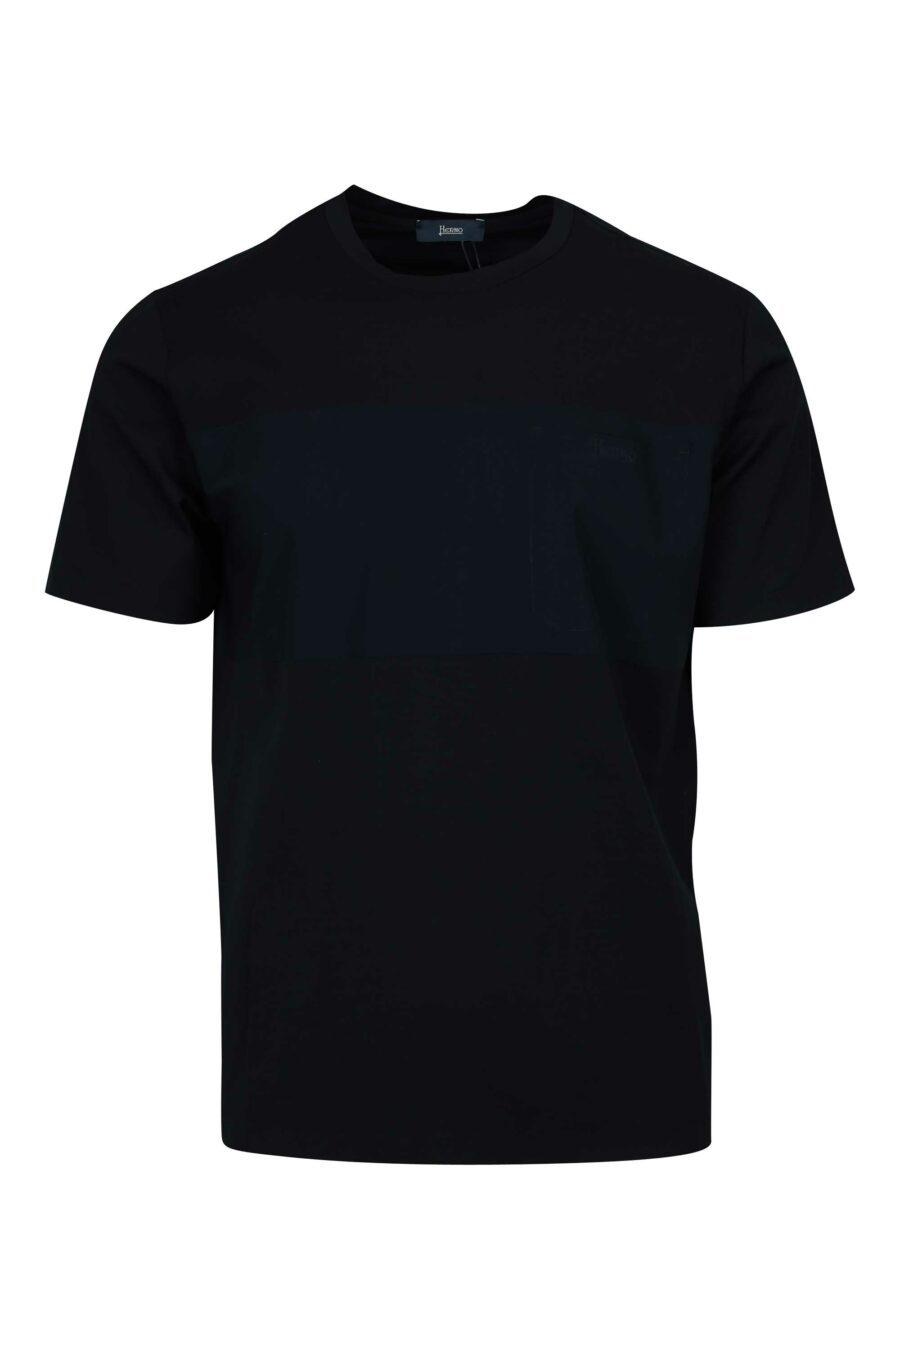 Schwarzes Strick-T-Shirt mit Logo - 8055721922492